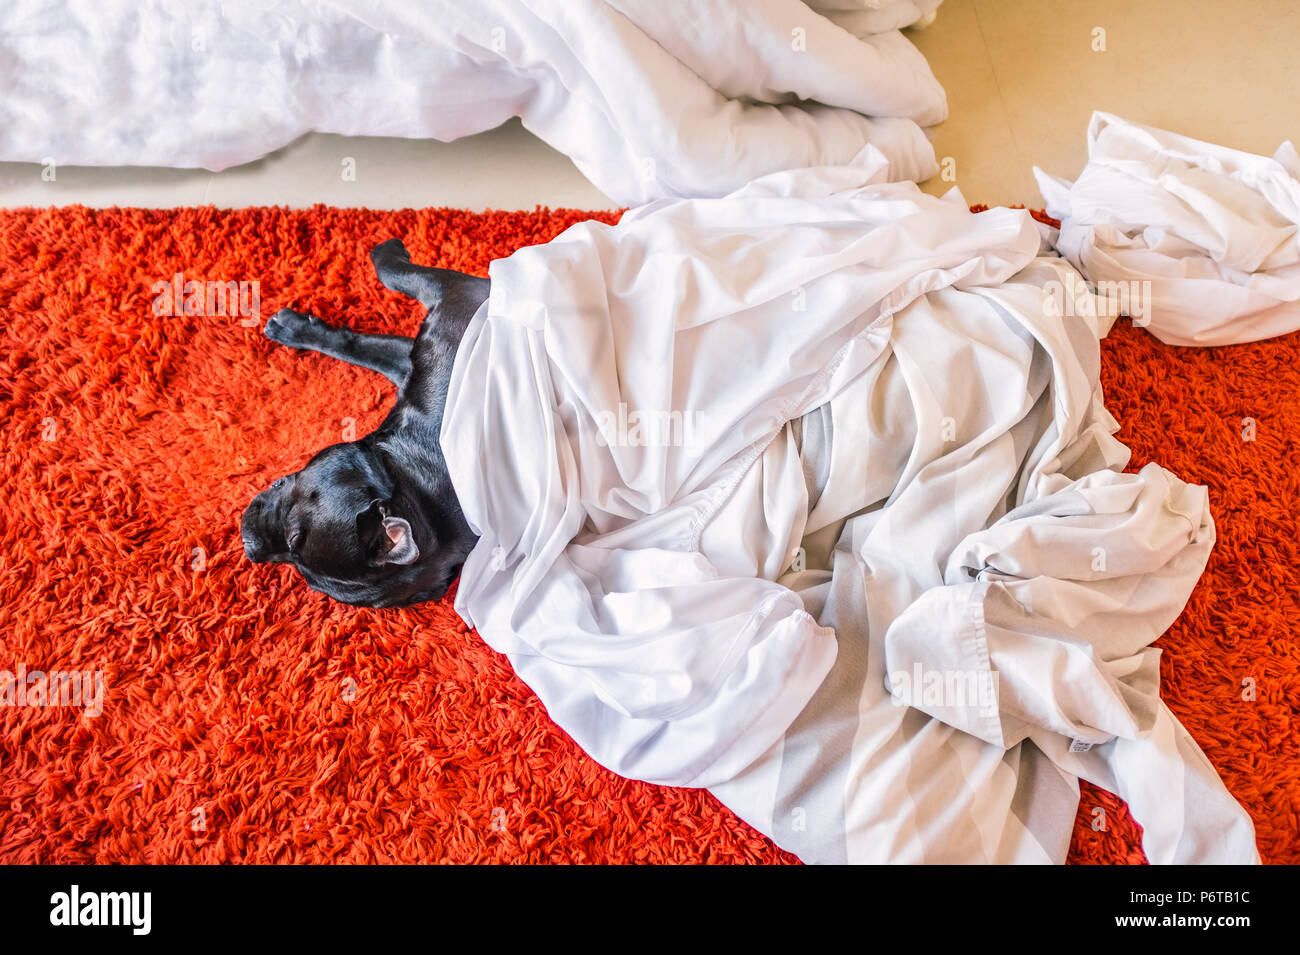 Negro guapo staffordshire bull terrier perro acostado sobre una alfombra roja sobre una cama, habitación piso durmiendo bajo las sábanas y un edredón cubierta tomado fuera de la cama para servicio de lavandería Foto de stock